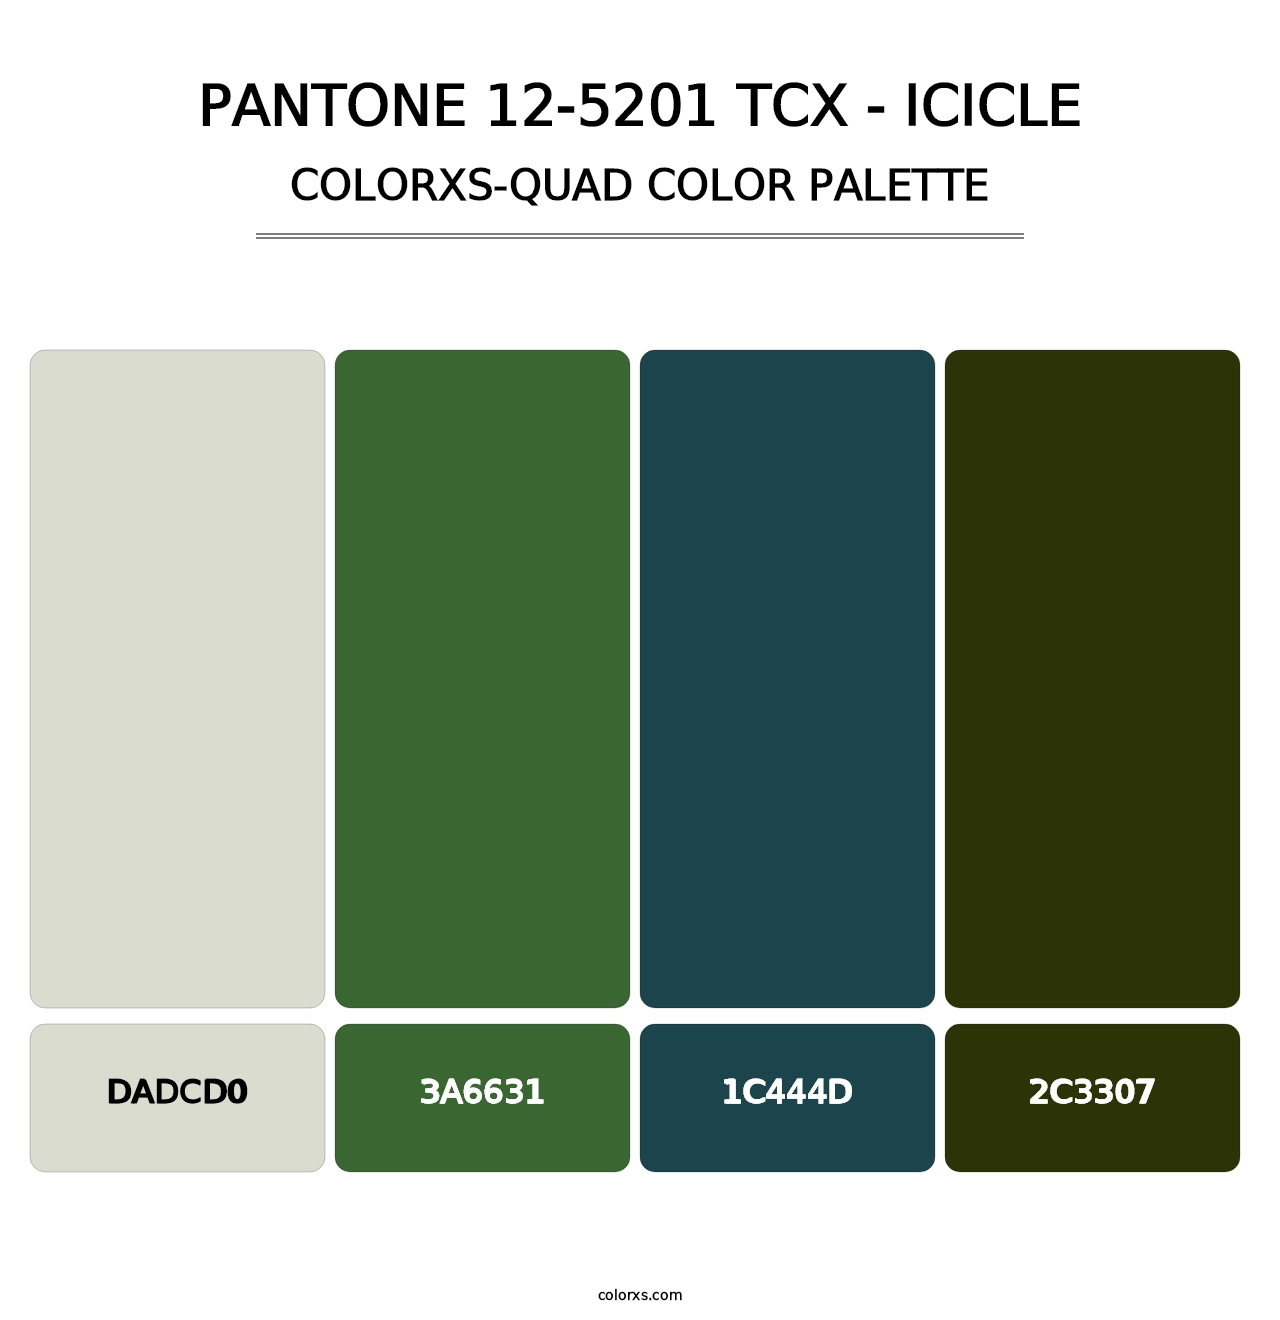 PANTONE 12-5201 TCX - Icicle - Colorxs Quad Palette